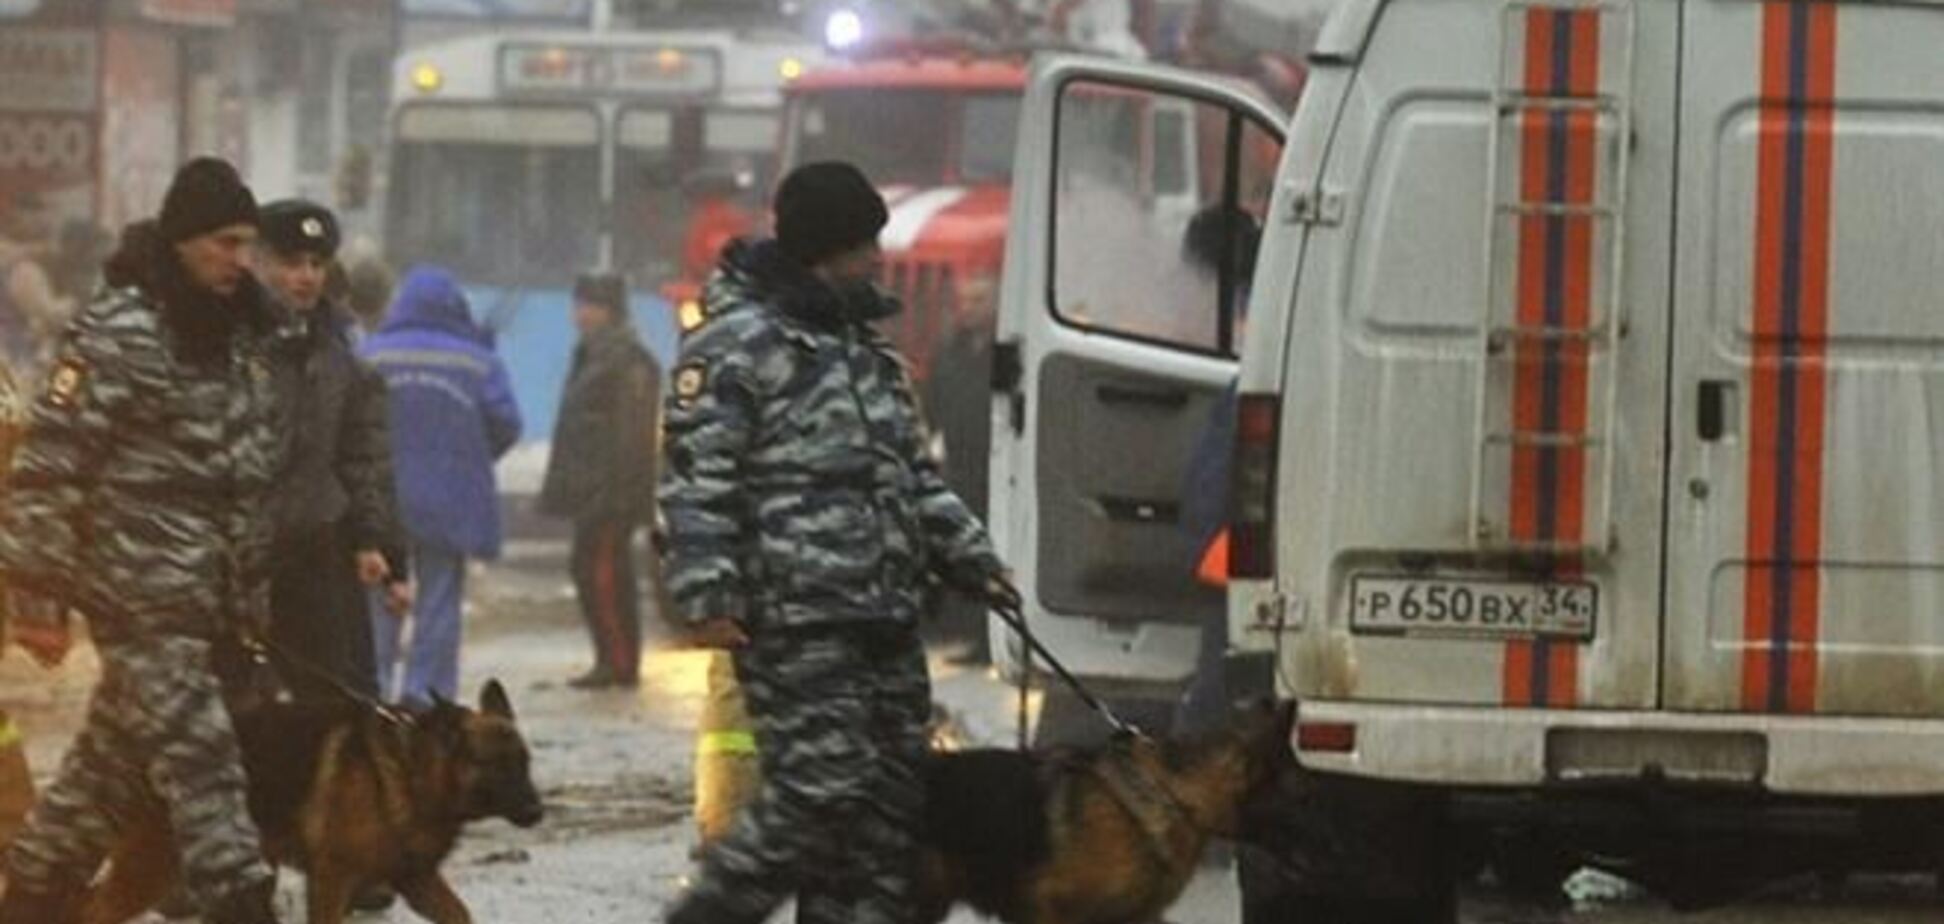 Проверки полиции в Волгограде: изьяты наркотики и огнестрельное оружие